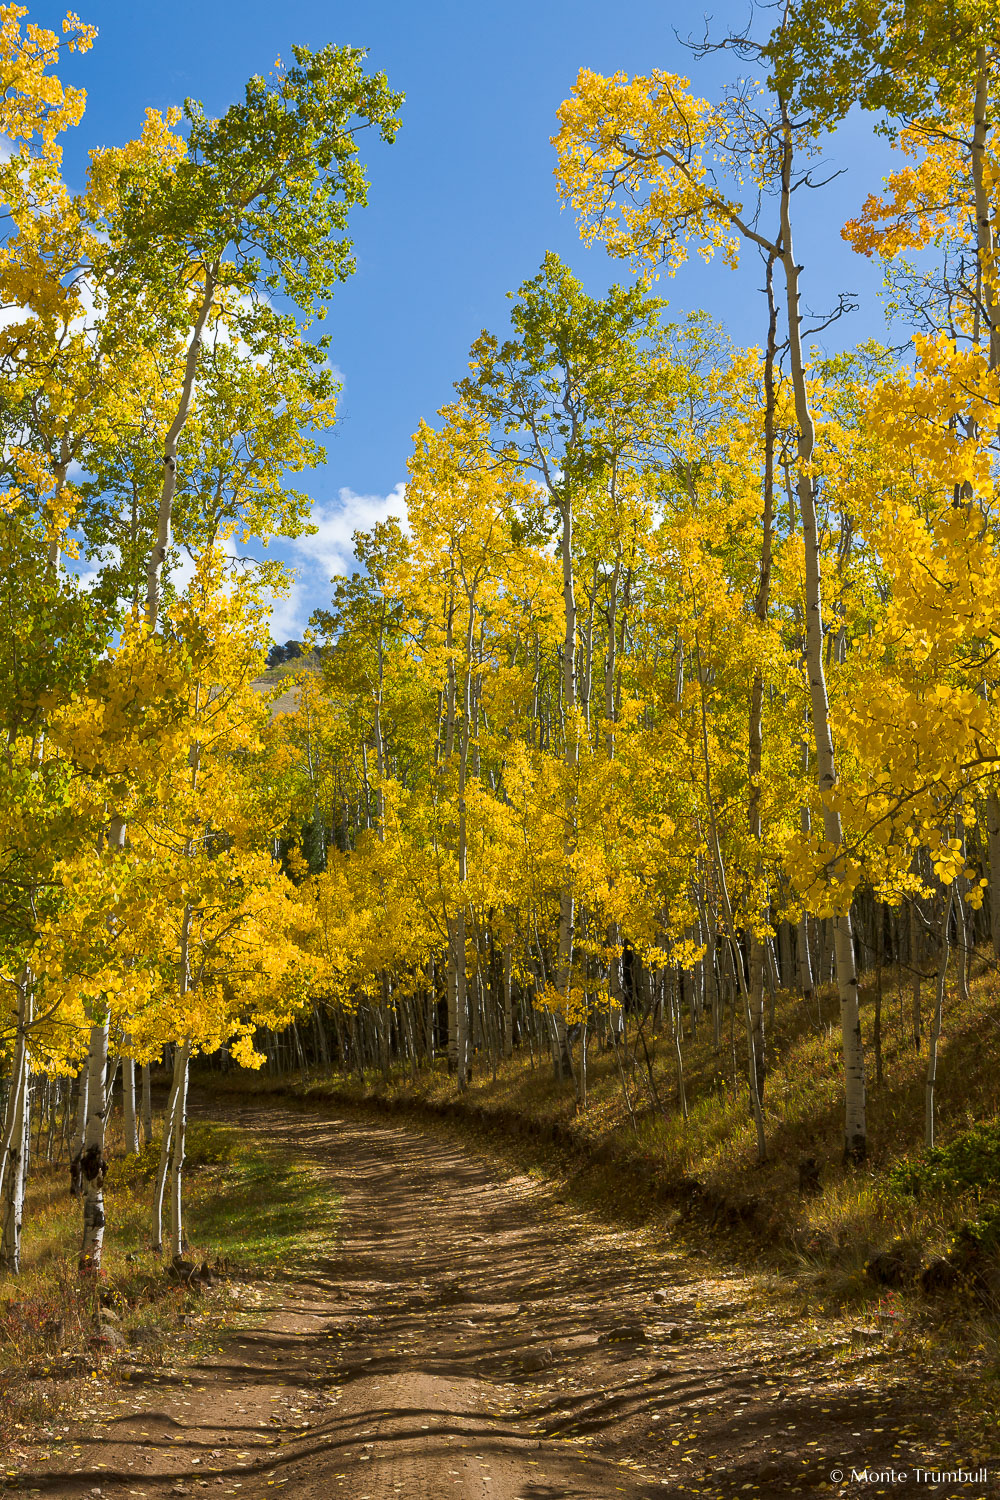 MT-20111005-105816-0088-Colorado-Buena-Vista-golden-aspen-trees-blue-sky-road.jpg